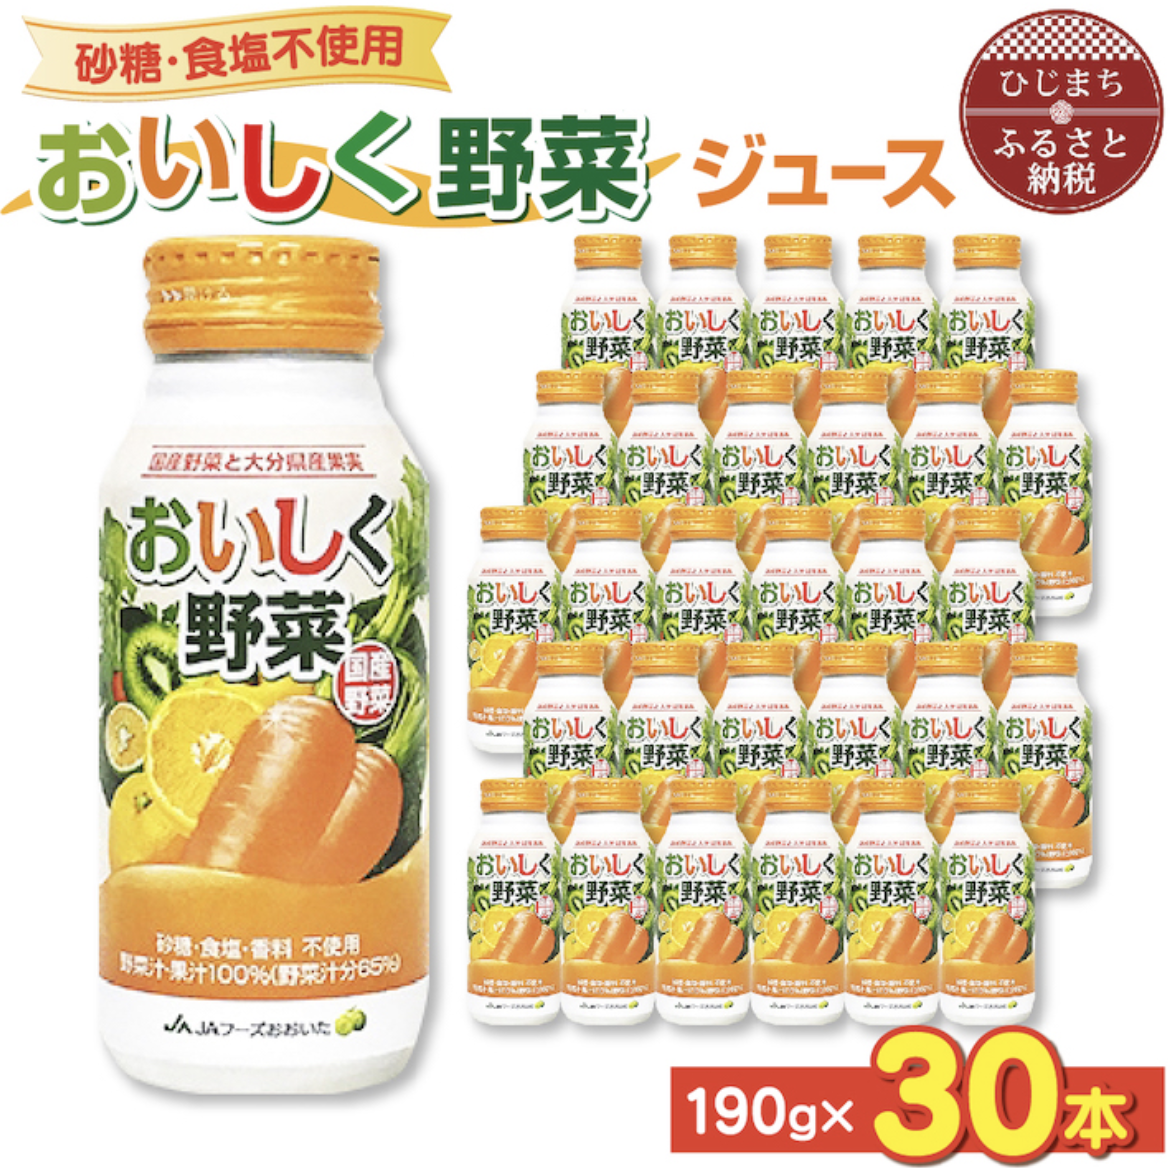 おいしく野菜ジュース 砂糖・食塩不使用 190g × 30本